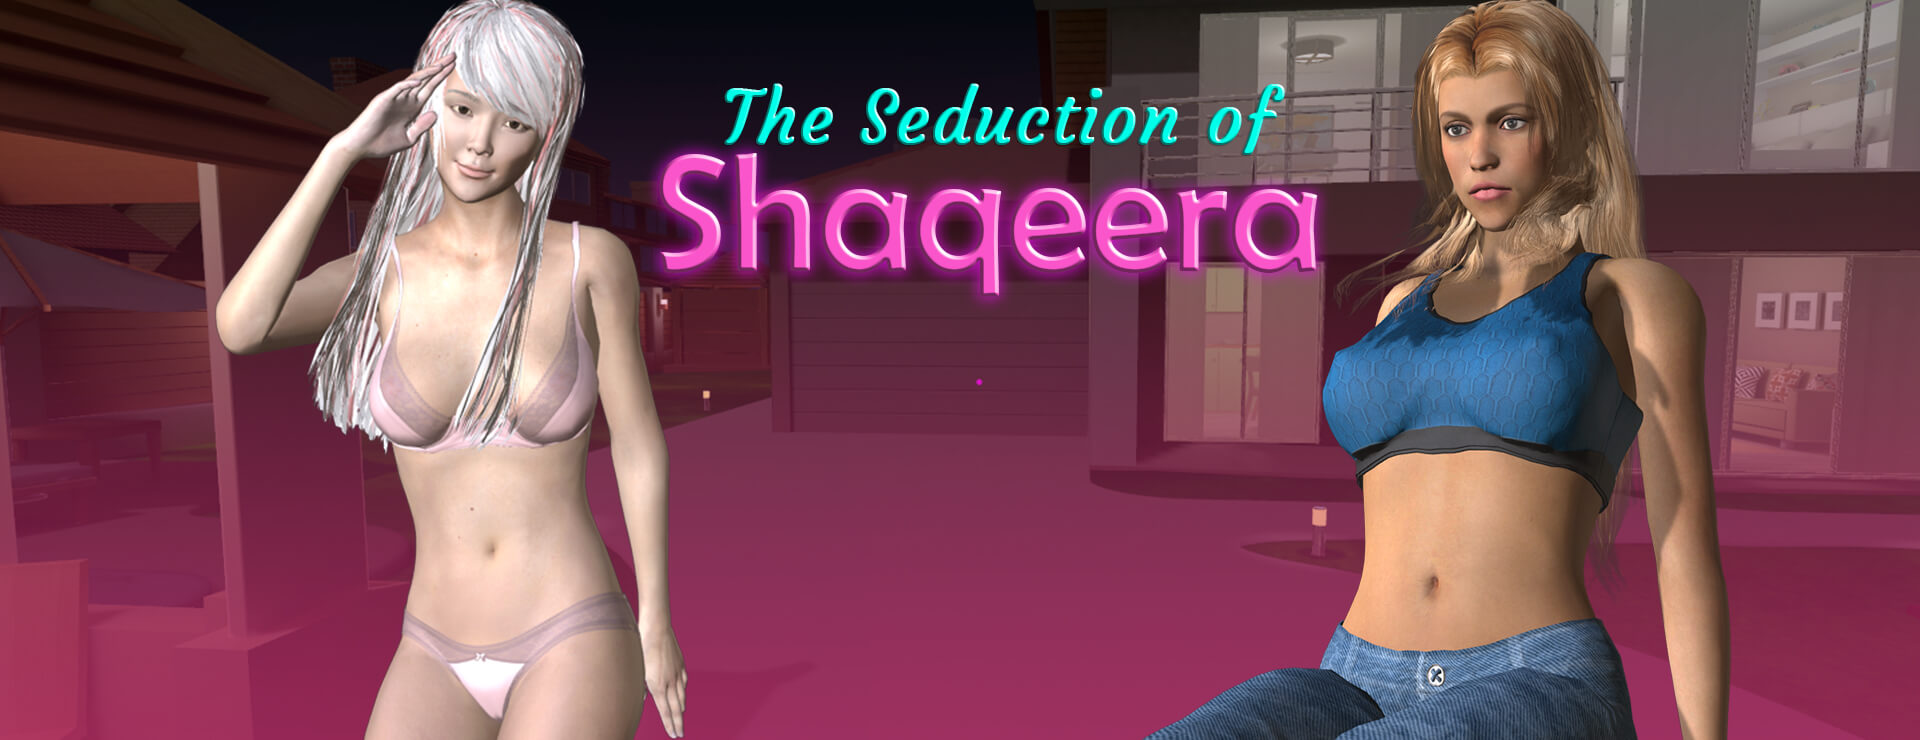 The Seduction Of Shaqeera - Aventura Acción Juego